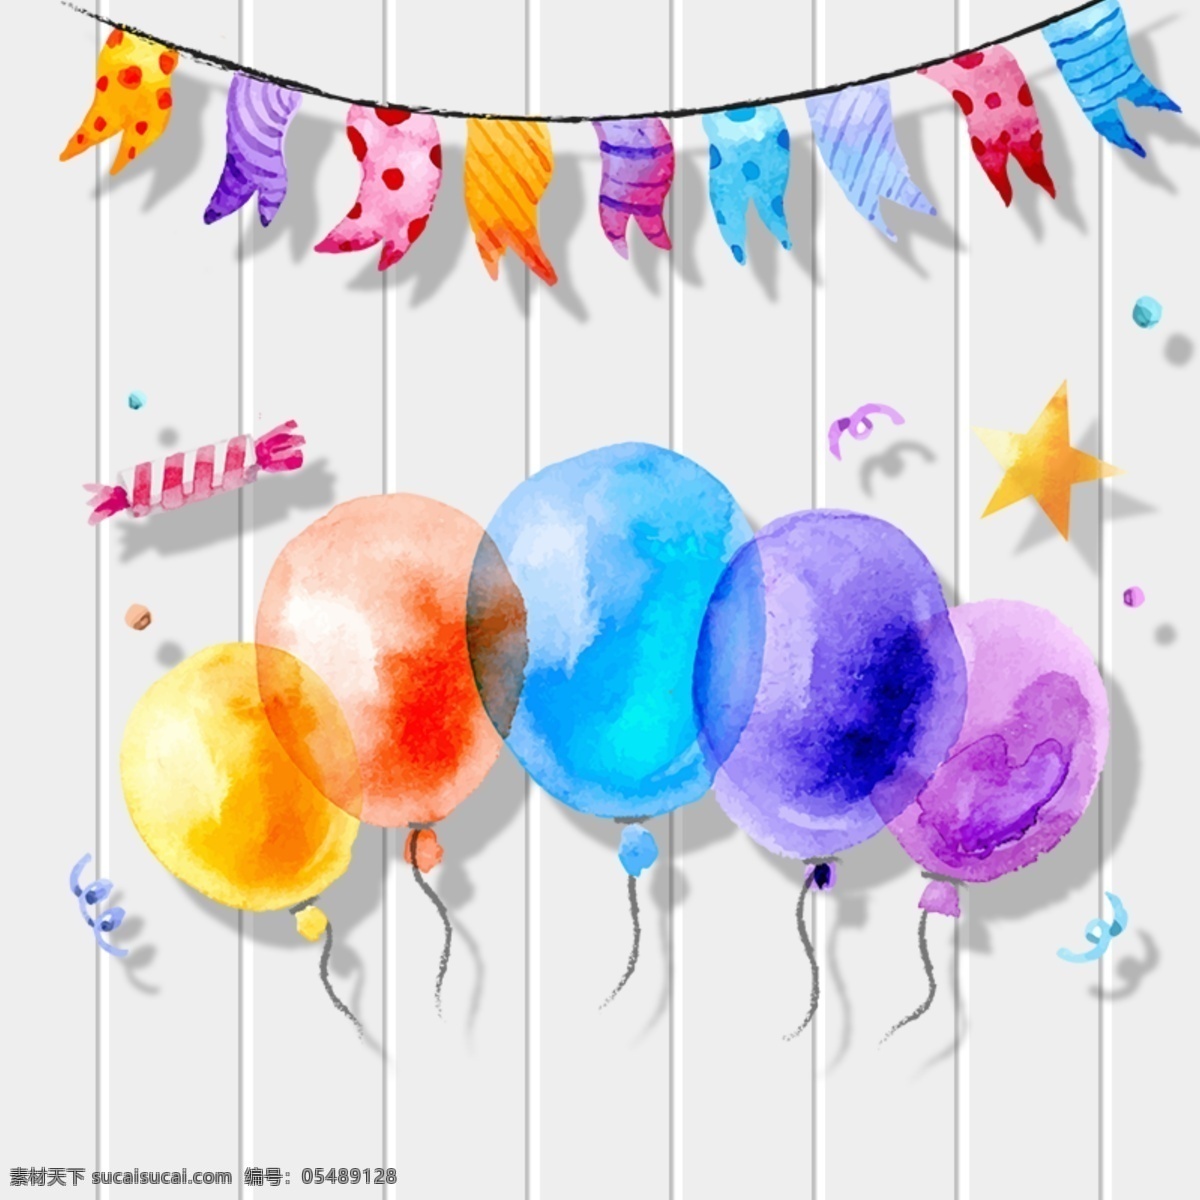 生日 派对 海报 背景 生日派对 气球 彩旗 底纹 条纹 矢量 狂欢